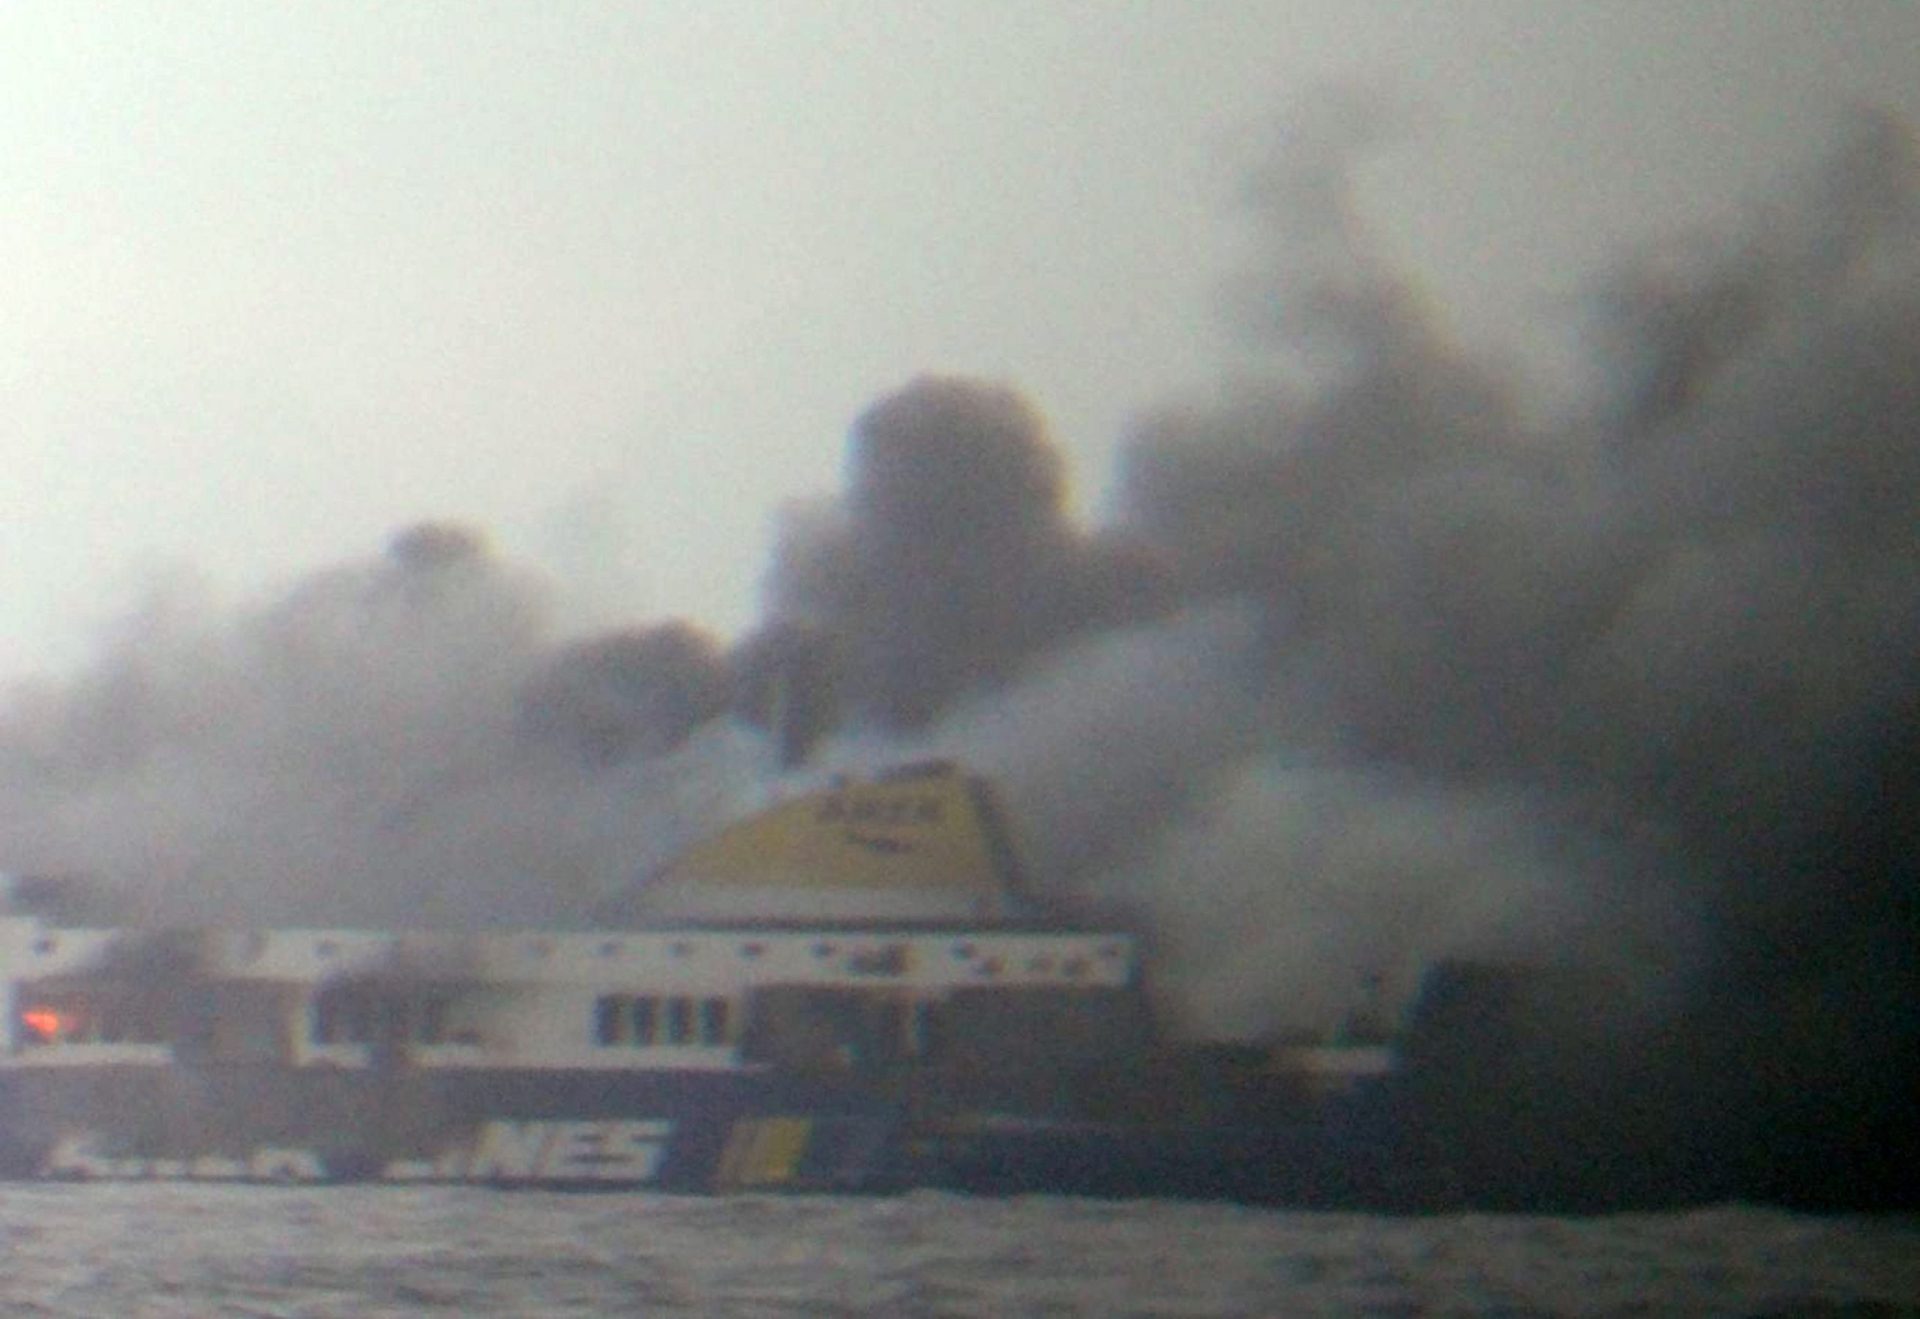 131 pessoas foram resgatadas do ferry italiano que se incendiou